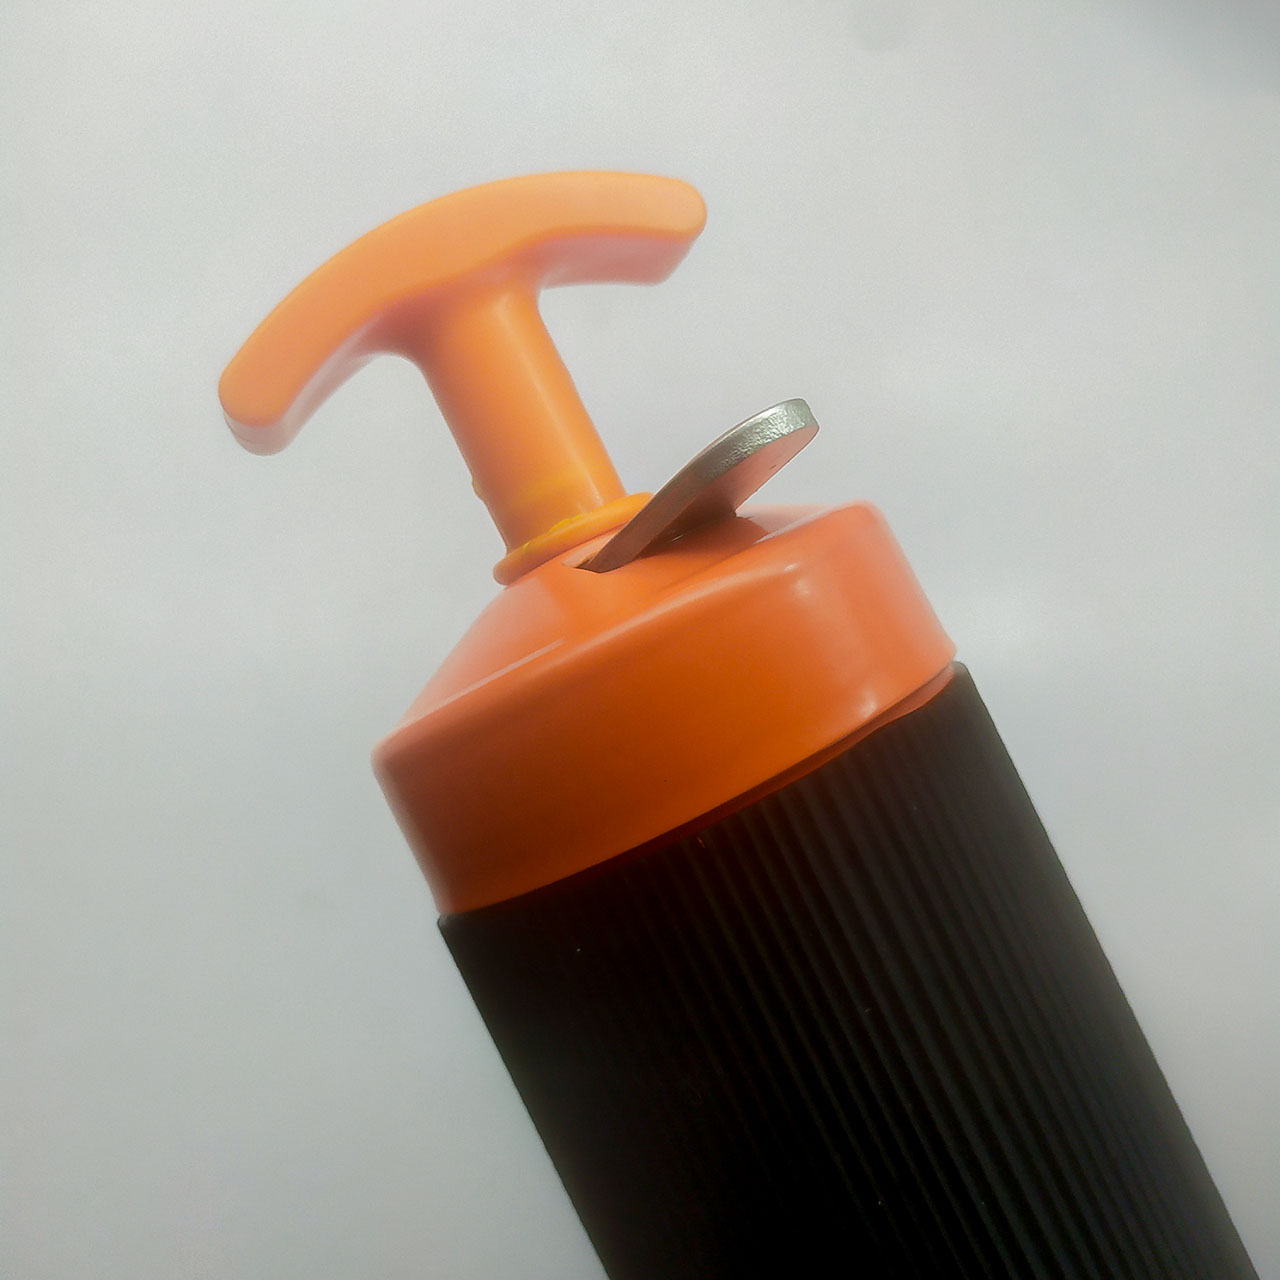 đầu ống bơm có kết nối ren giúp dễ tháo lắp và vệ sinh